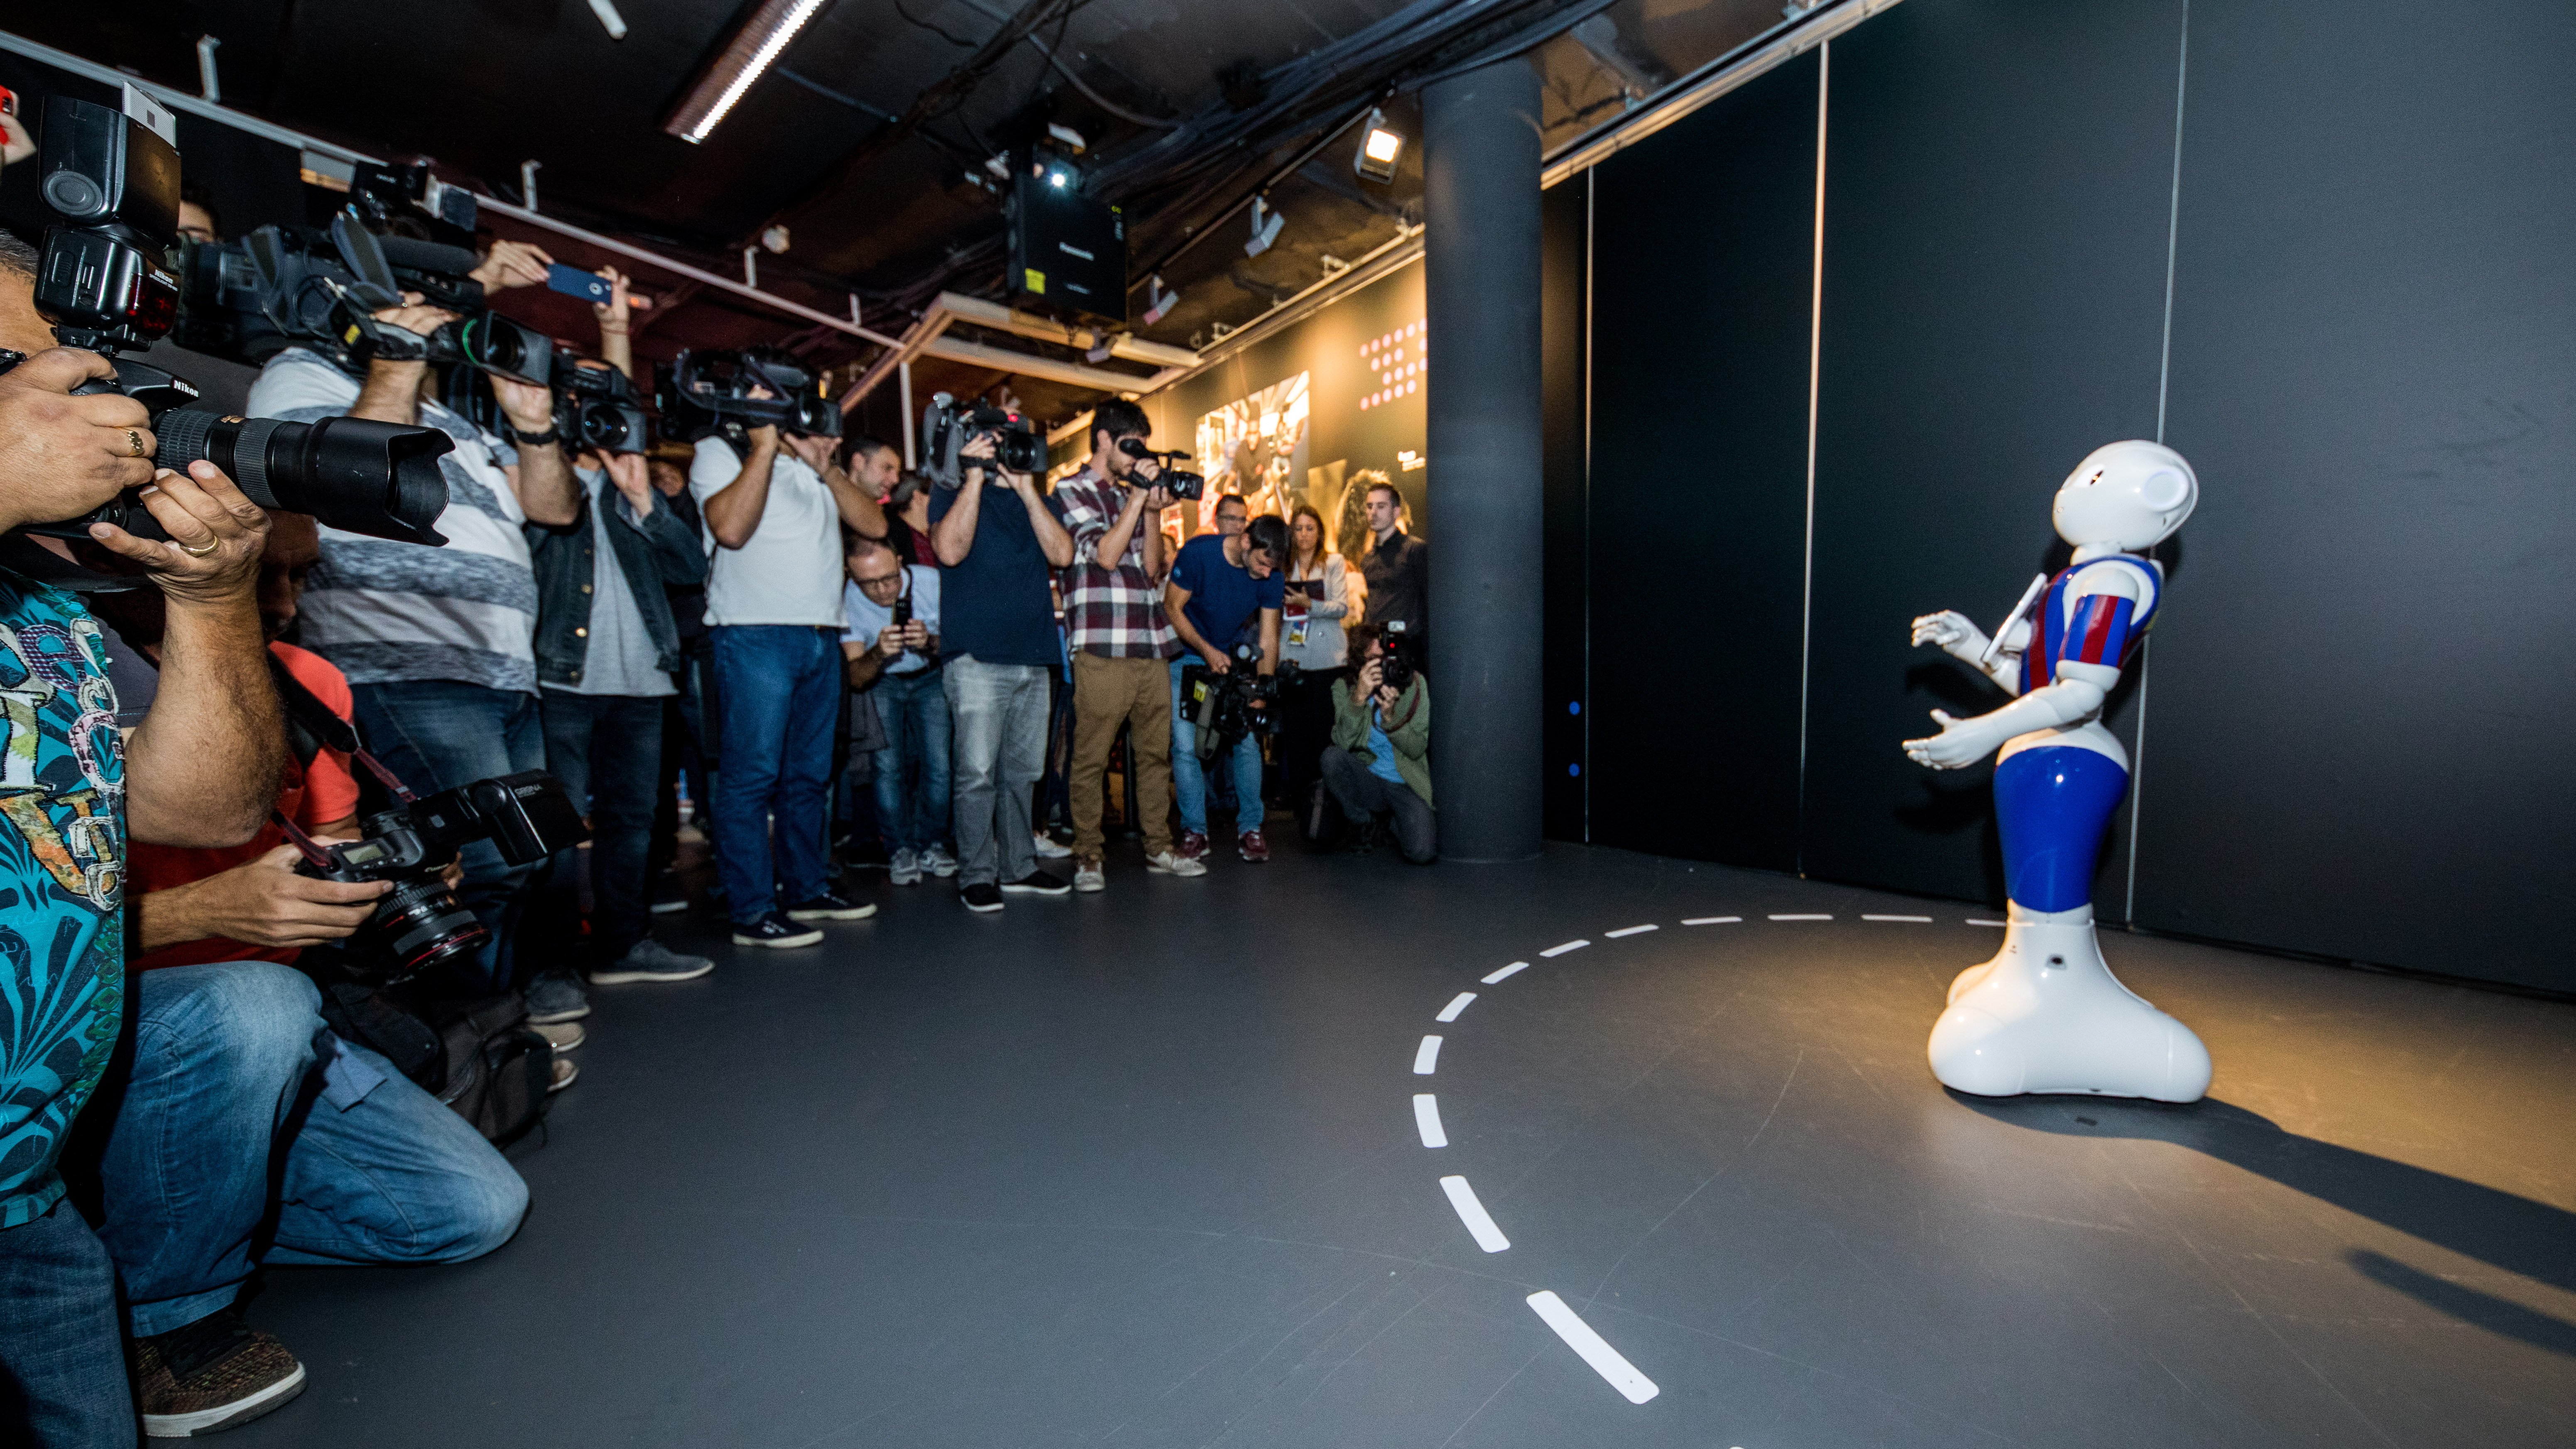 Un robot humanoide i tecnologia 360º per mostrar els valors de la Fundació Barça